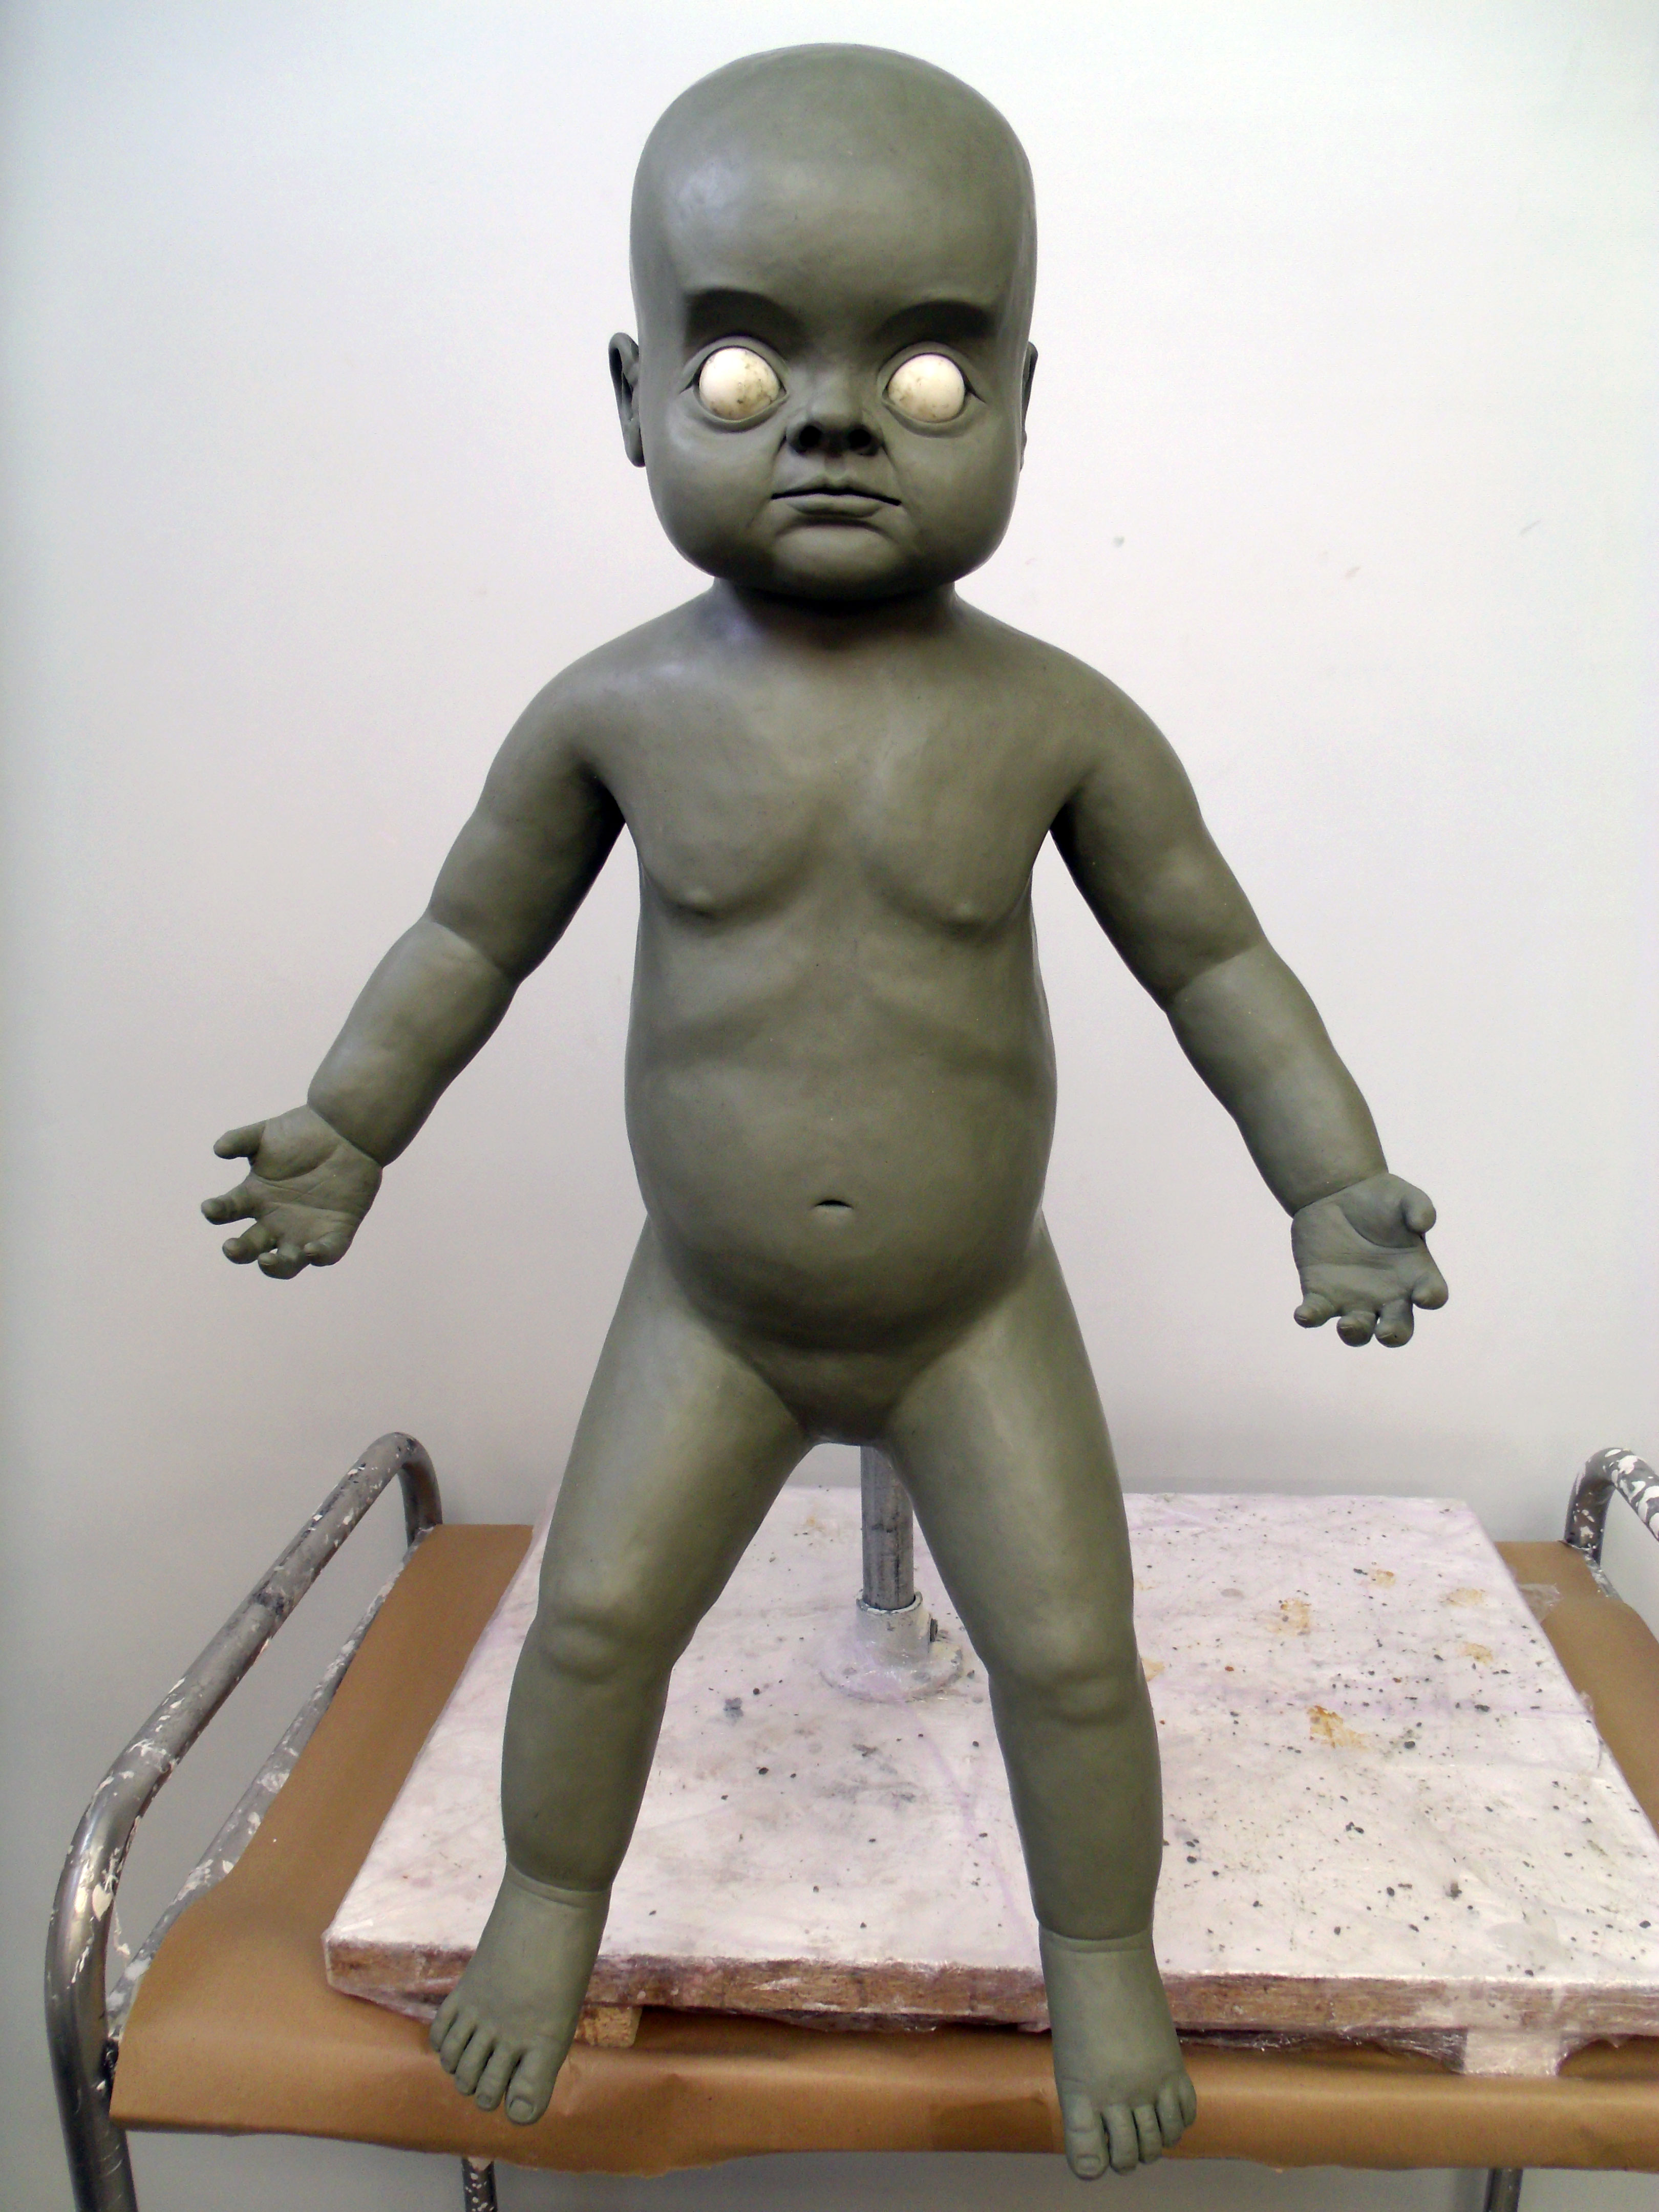 Final changeling baby full body sculpt